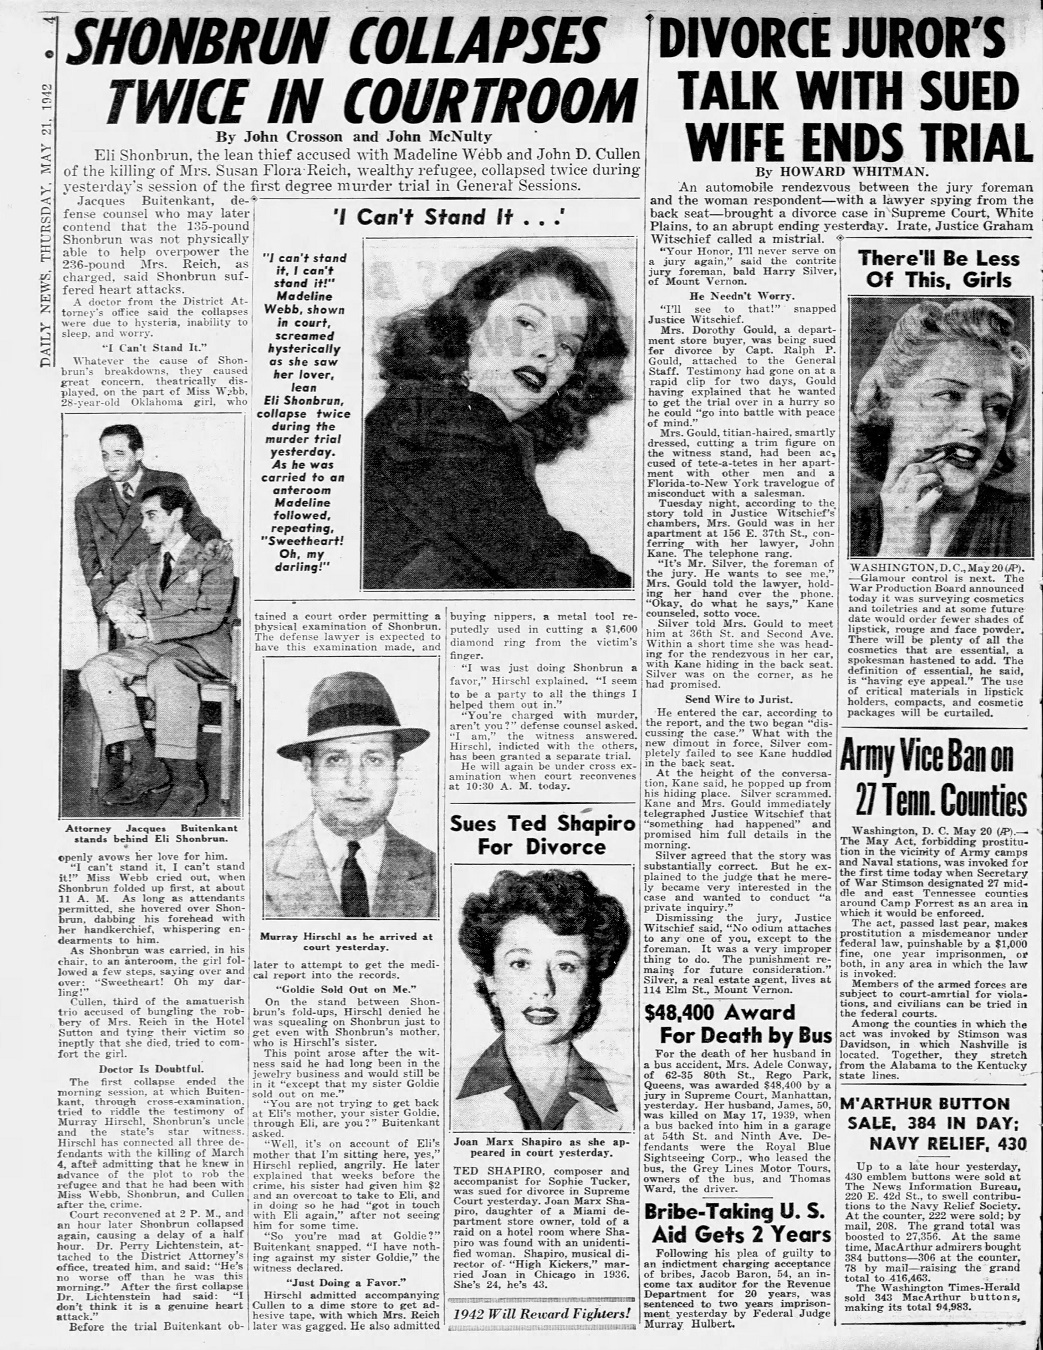 Daily_News_Thu__May_21__1942_.jpg